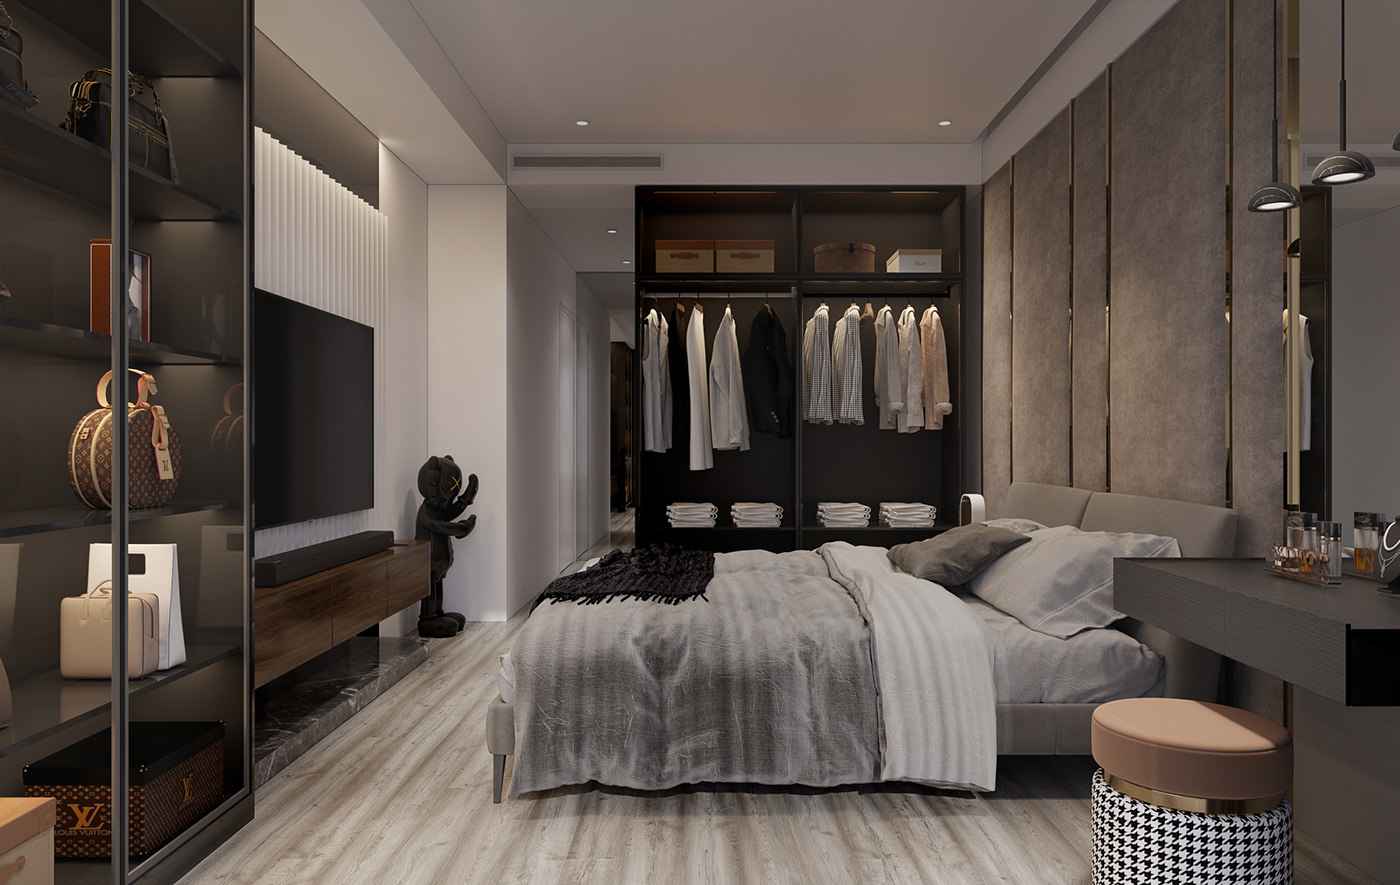 interior design  3ds max visualization Render bedroom design bedroom 3D modern